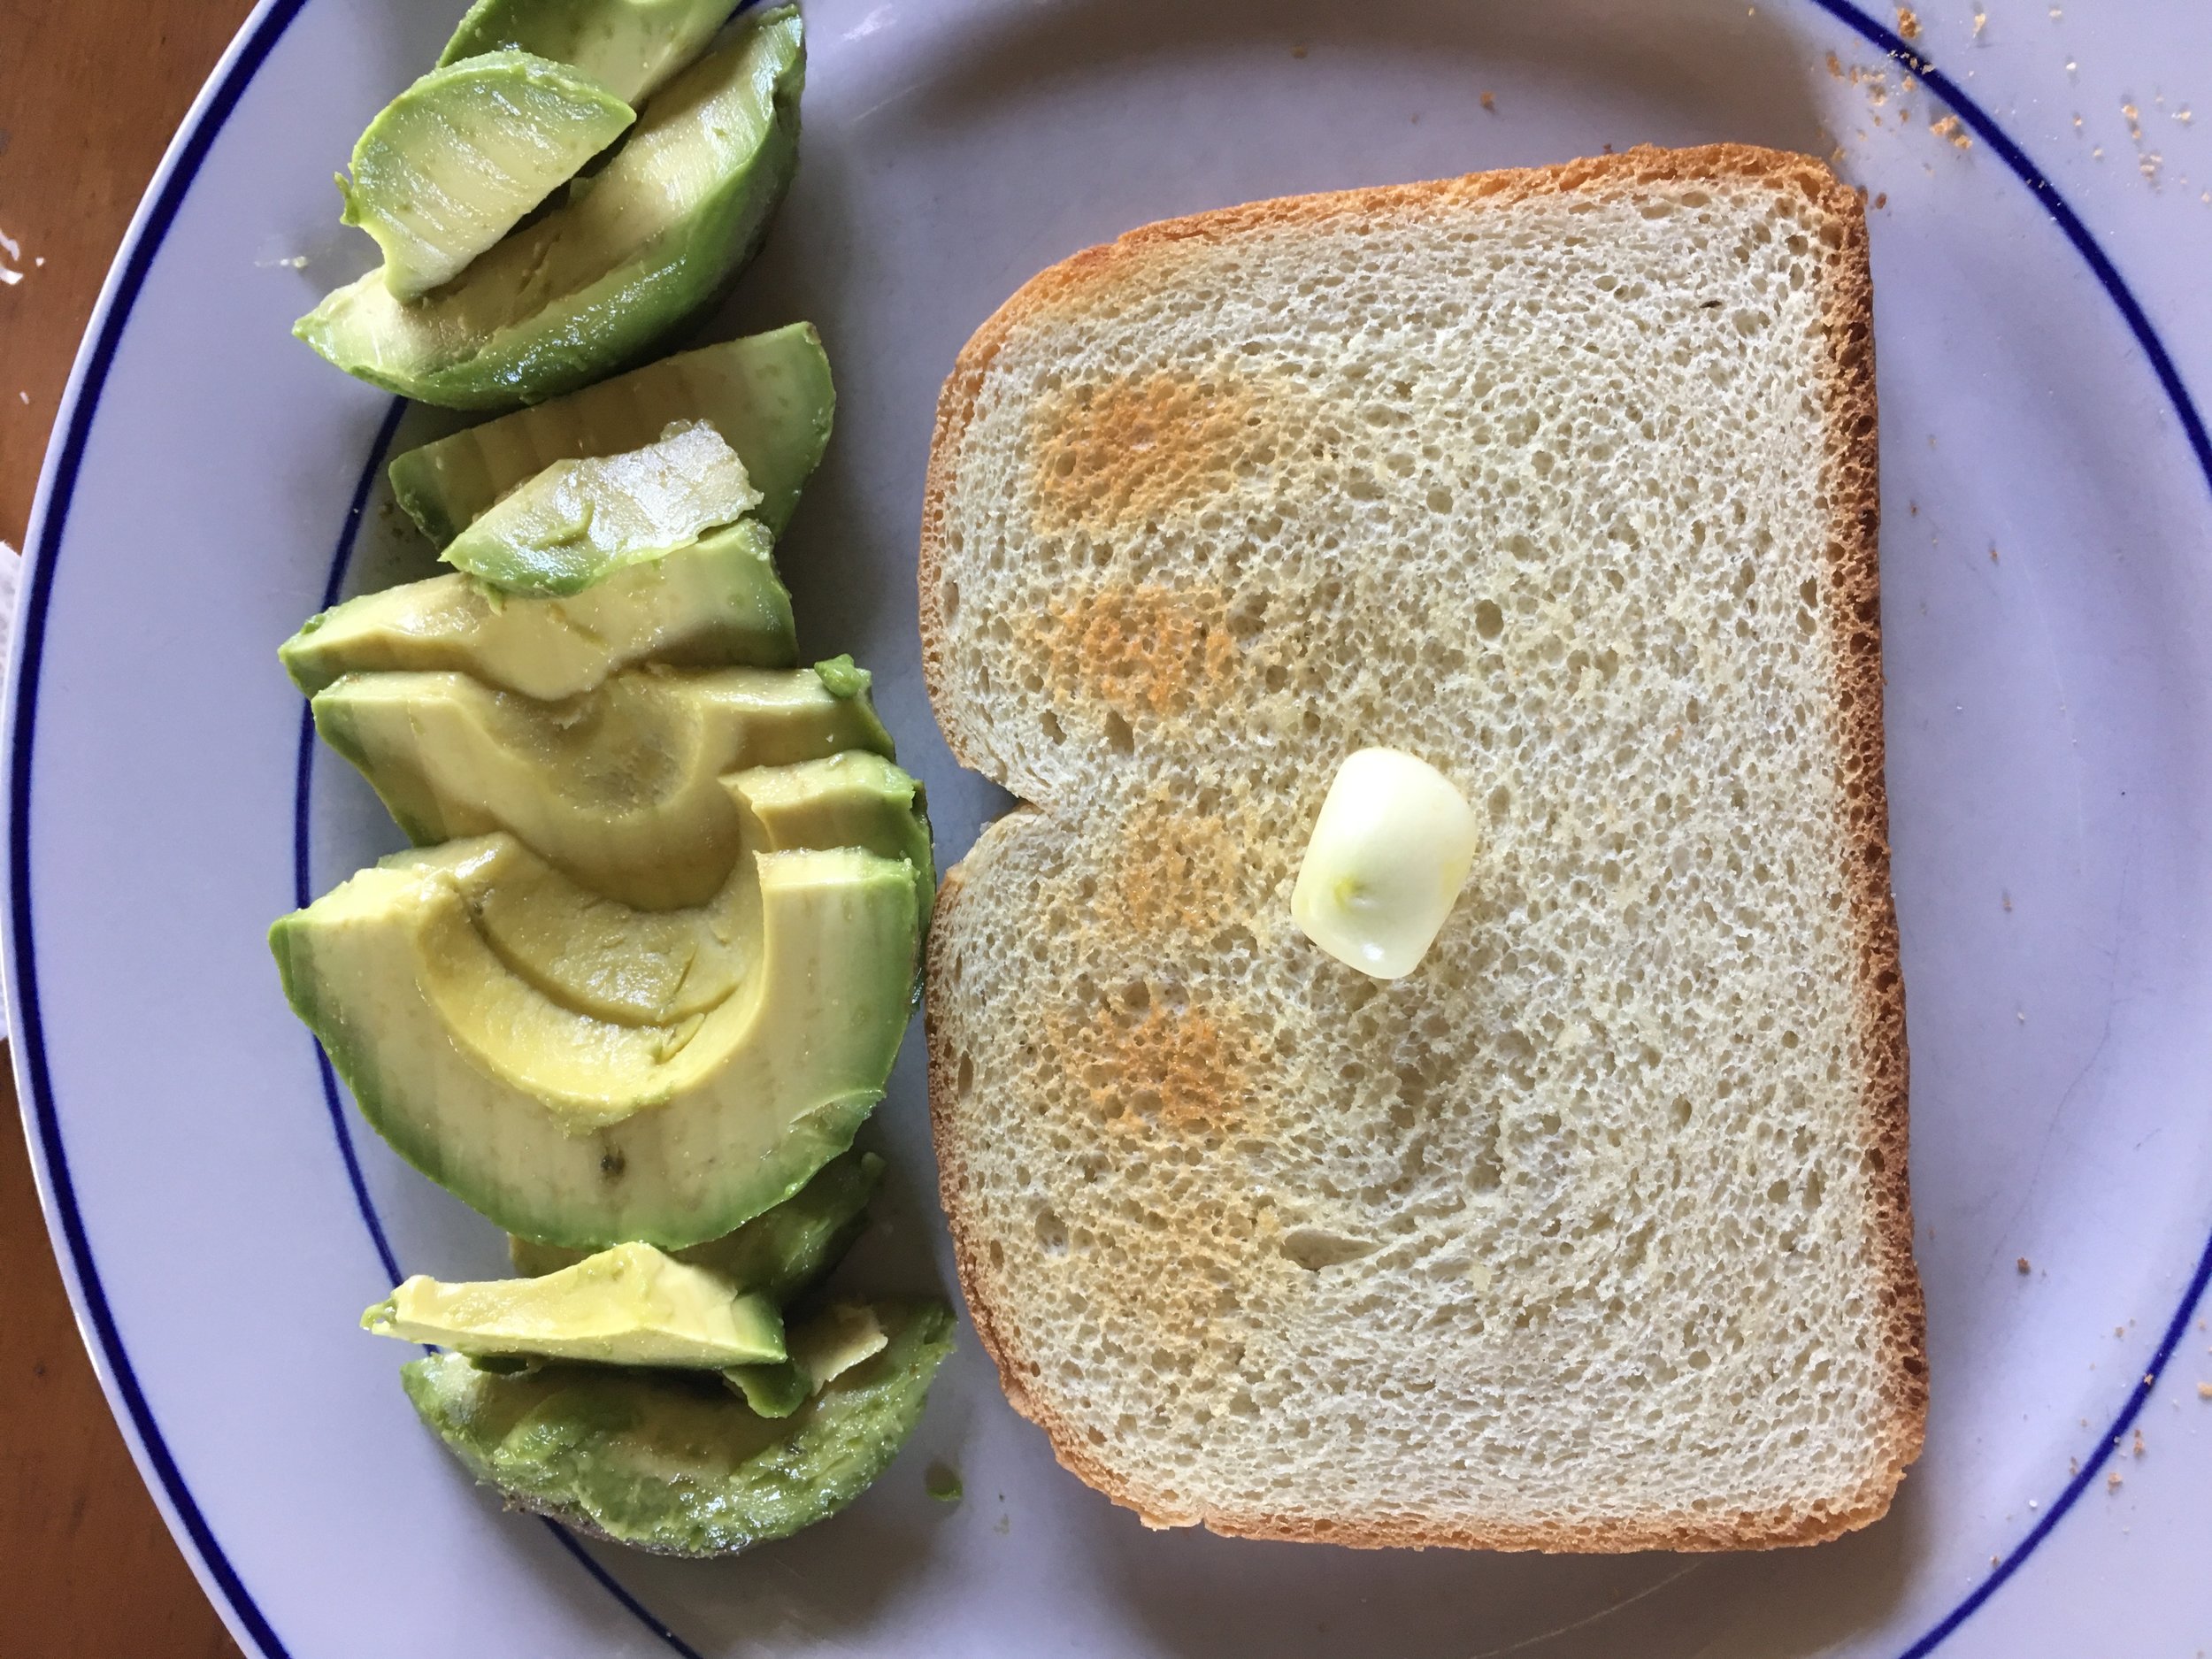 Rub garlic on toasted sandwich bread